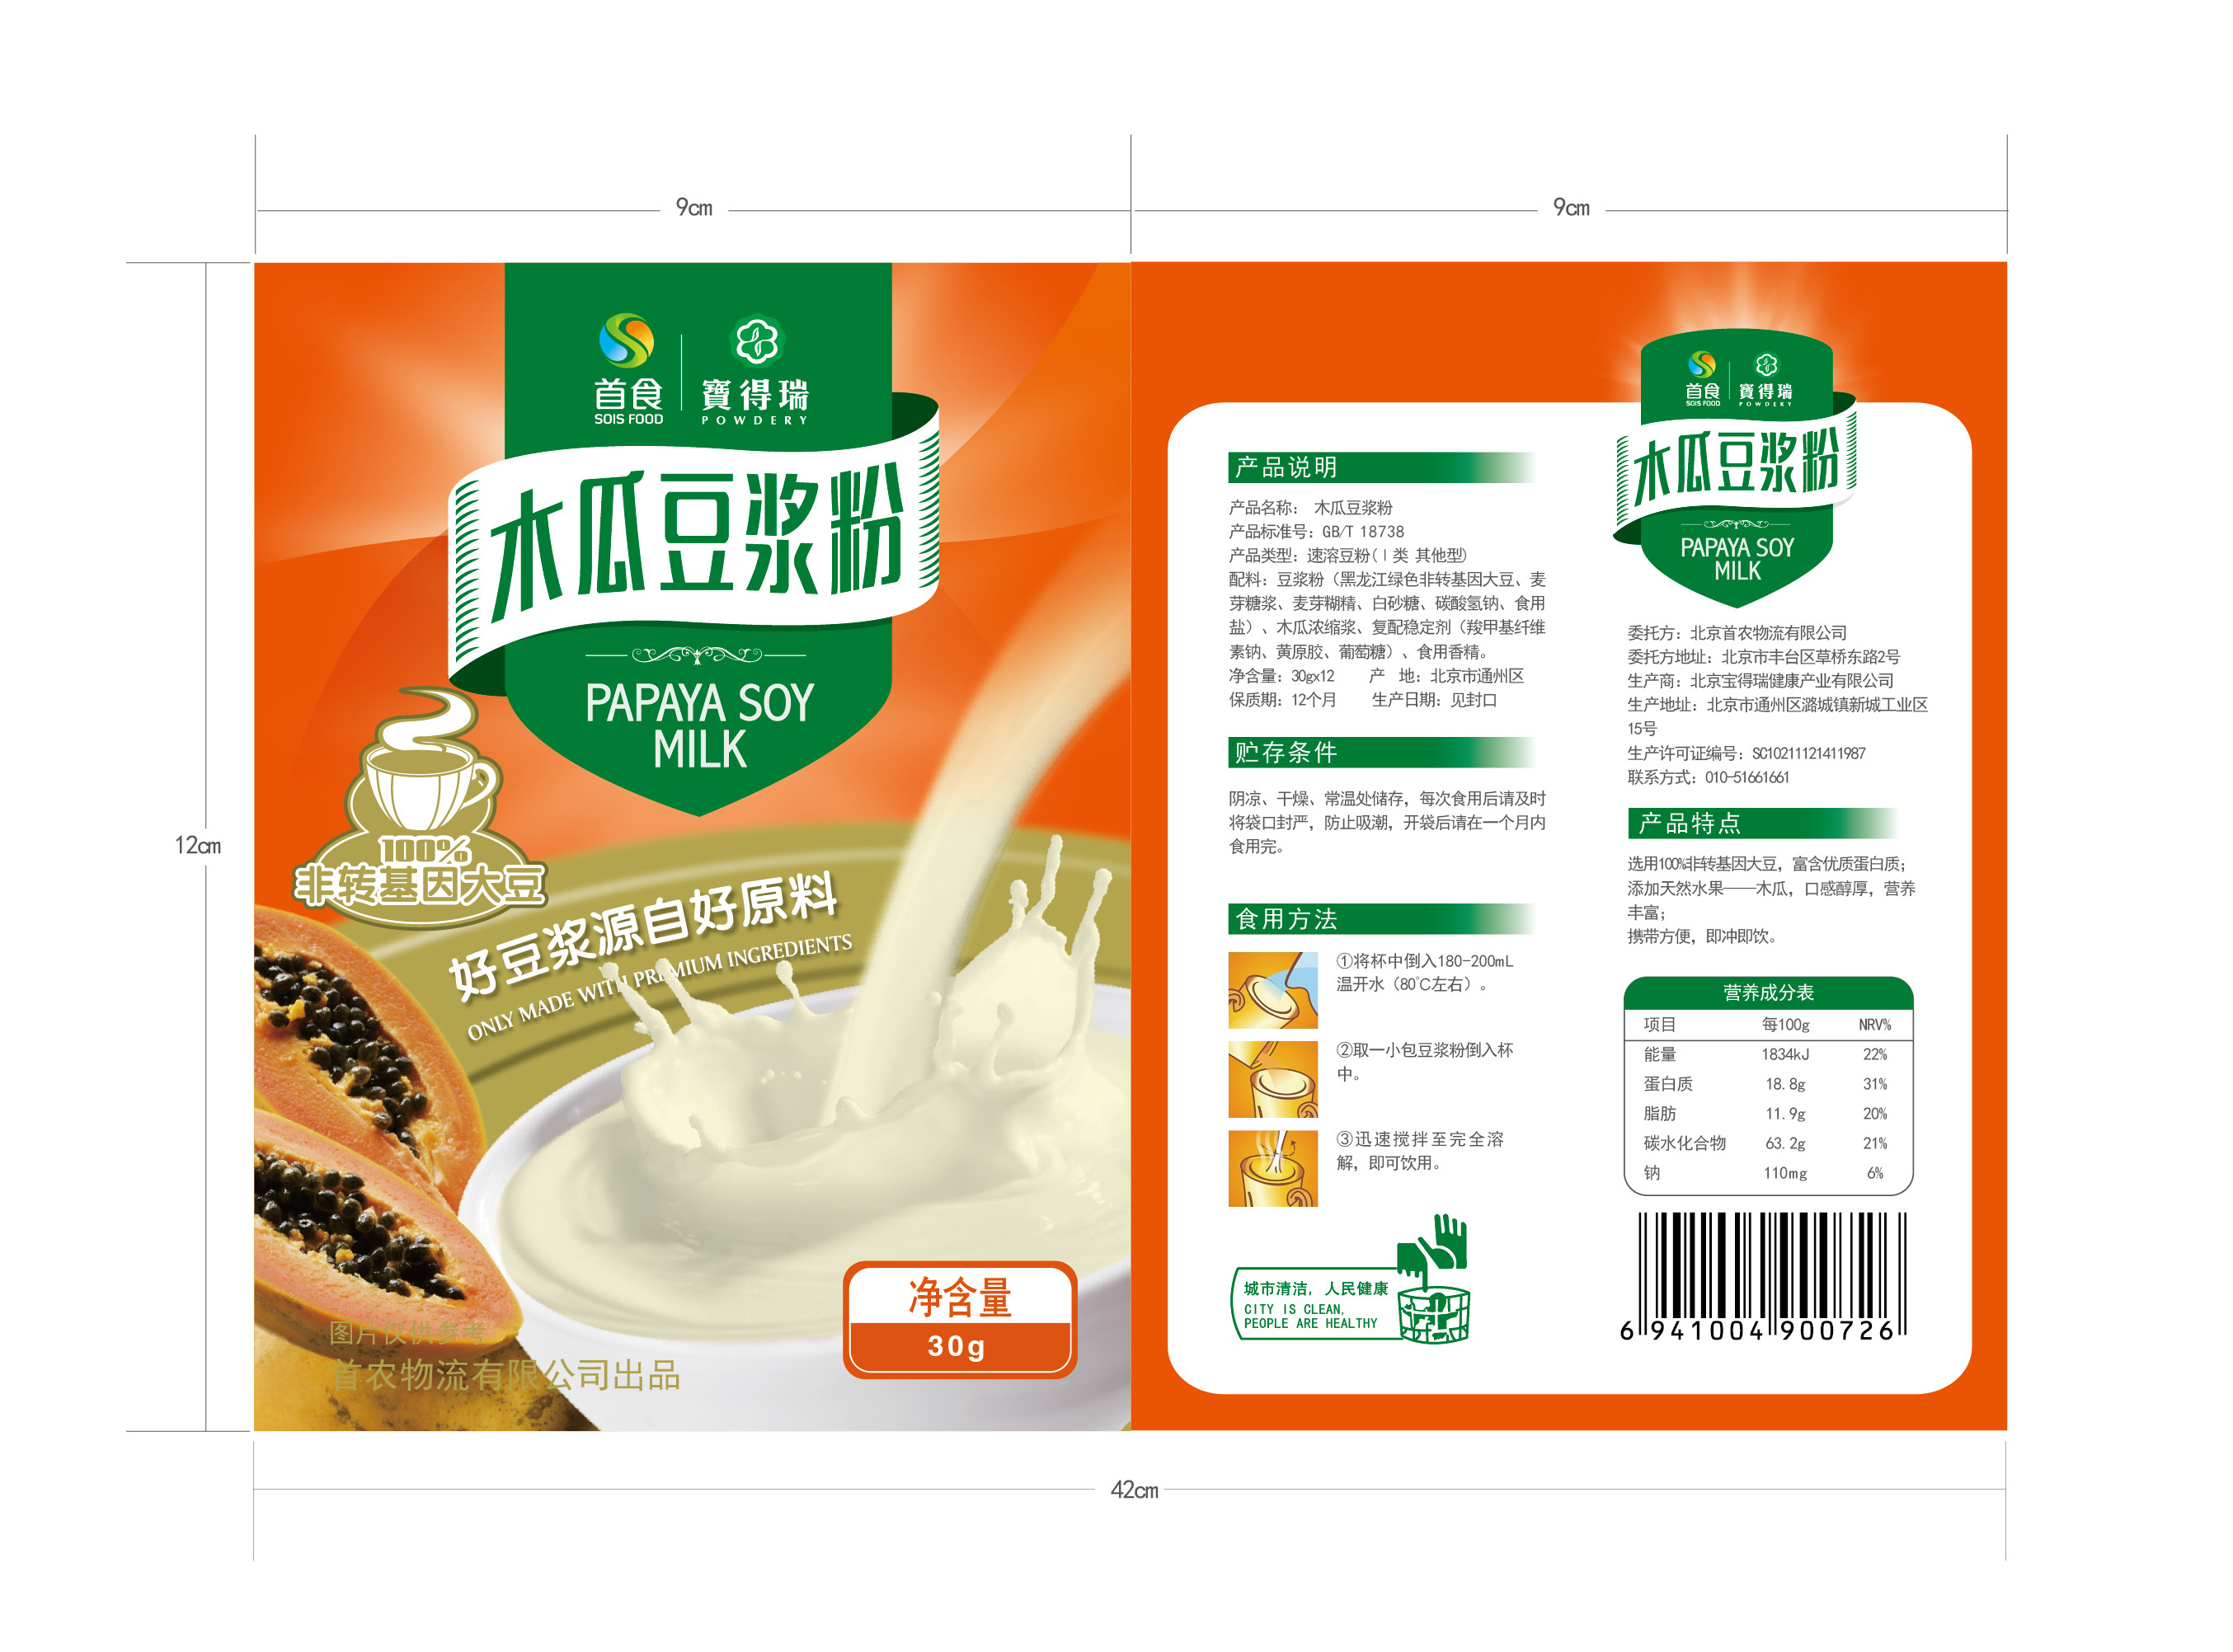 豆浆 - 美食介绍 - 小桃园-上海梵歌餐饮管理有限公司